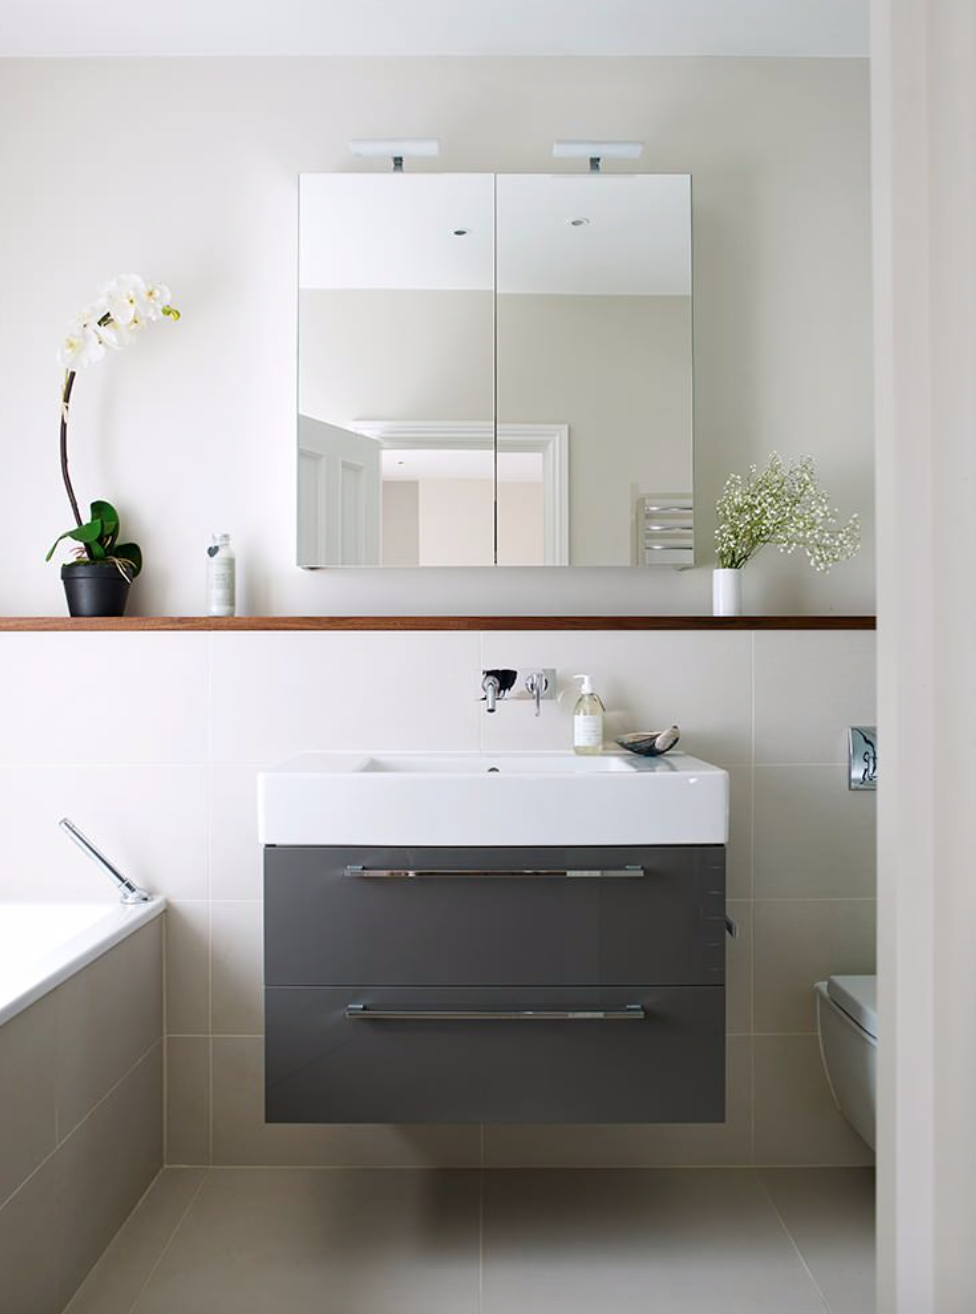 Tủ lưu trữ cửa gương giúp phòng tắm trở nên tinh tế, hiện đại và tươi sáng.